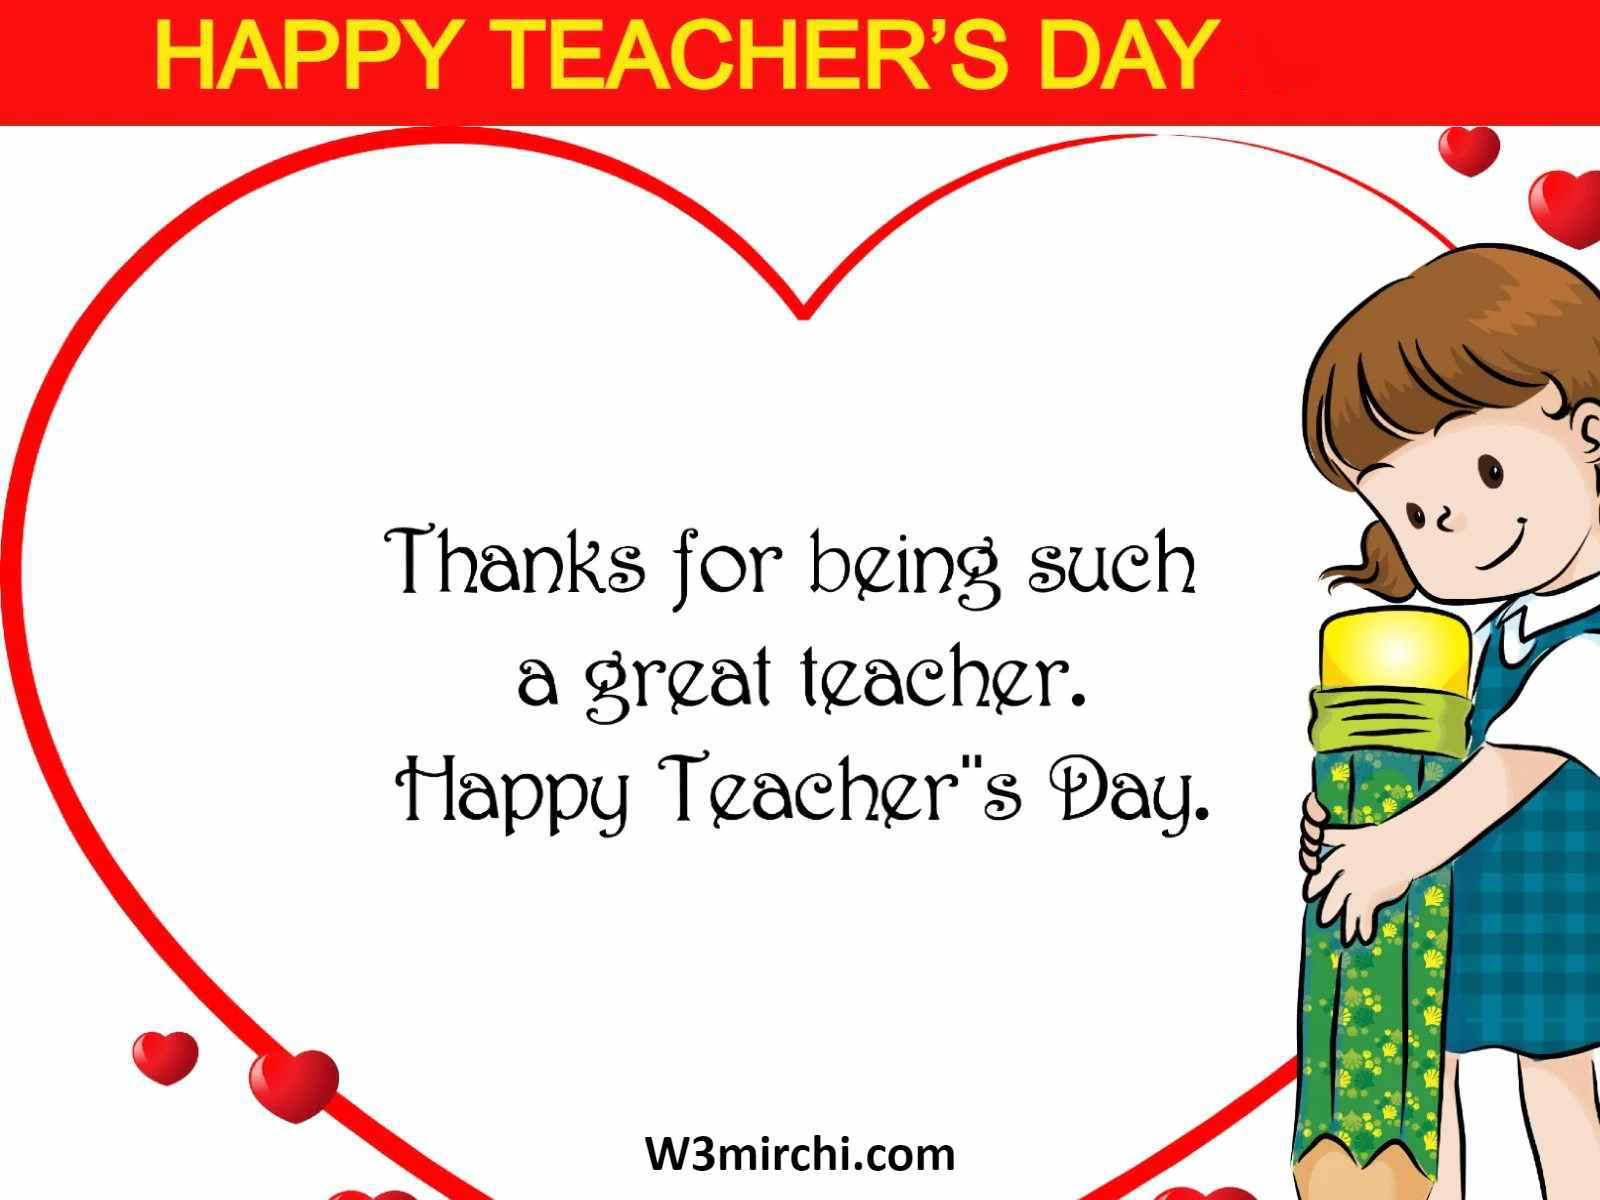 Happy Teacher